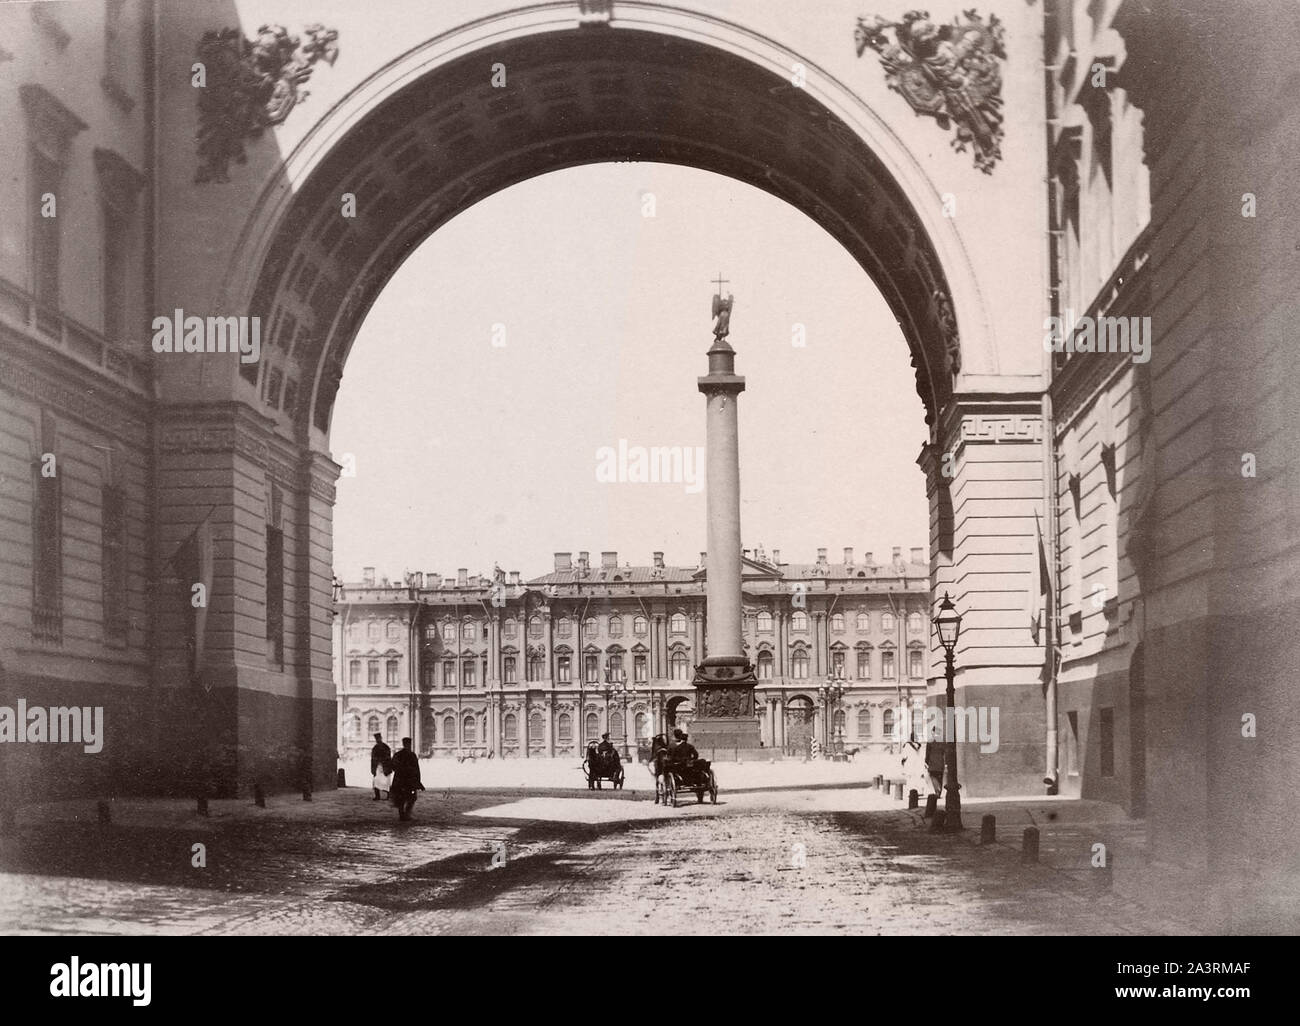 Vista del palacio de invierno a través del arco del personal general del edificio. San Petersburgo. El Palacio de Invierno fue la residencia oficial de la Federación de Rusia Foto de stock